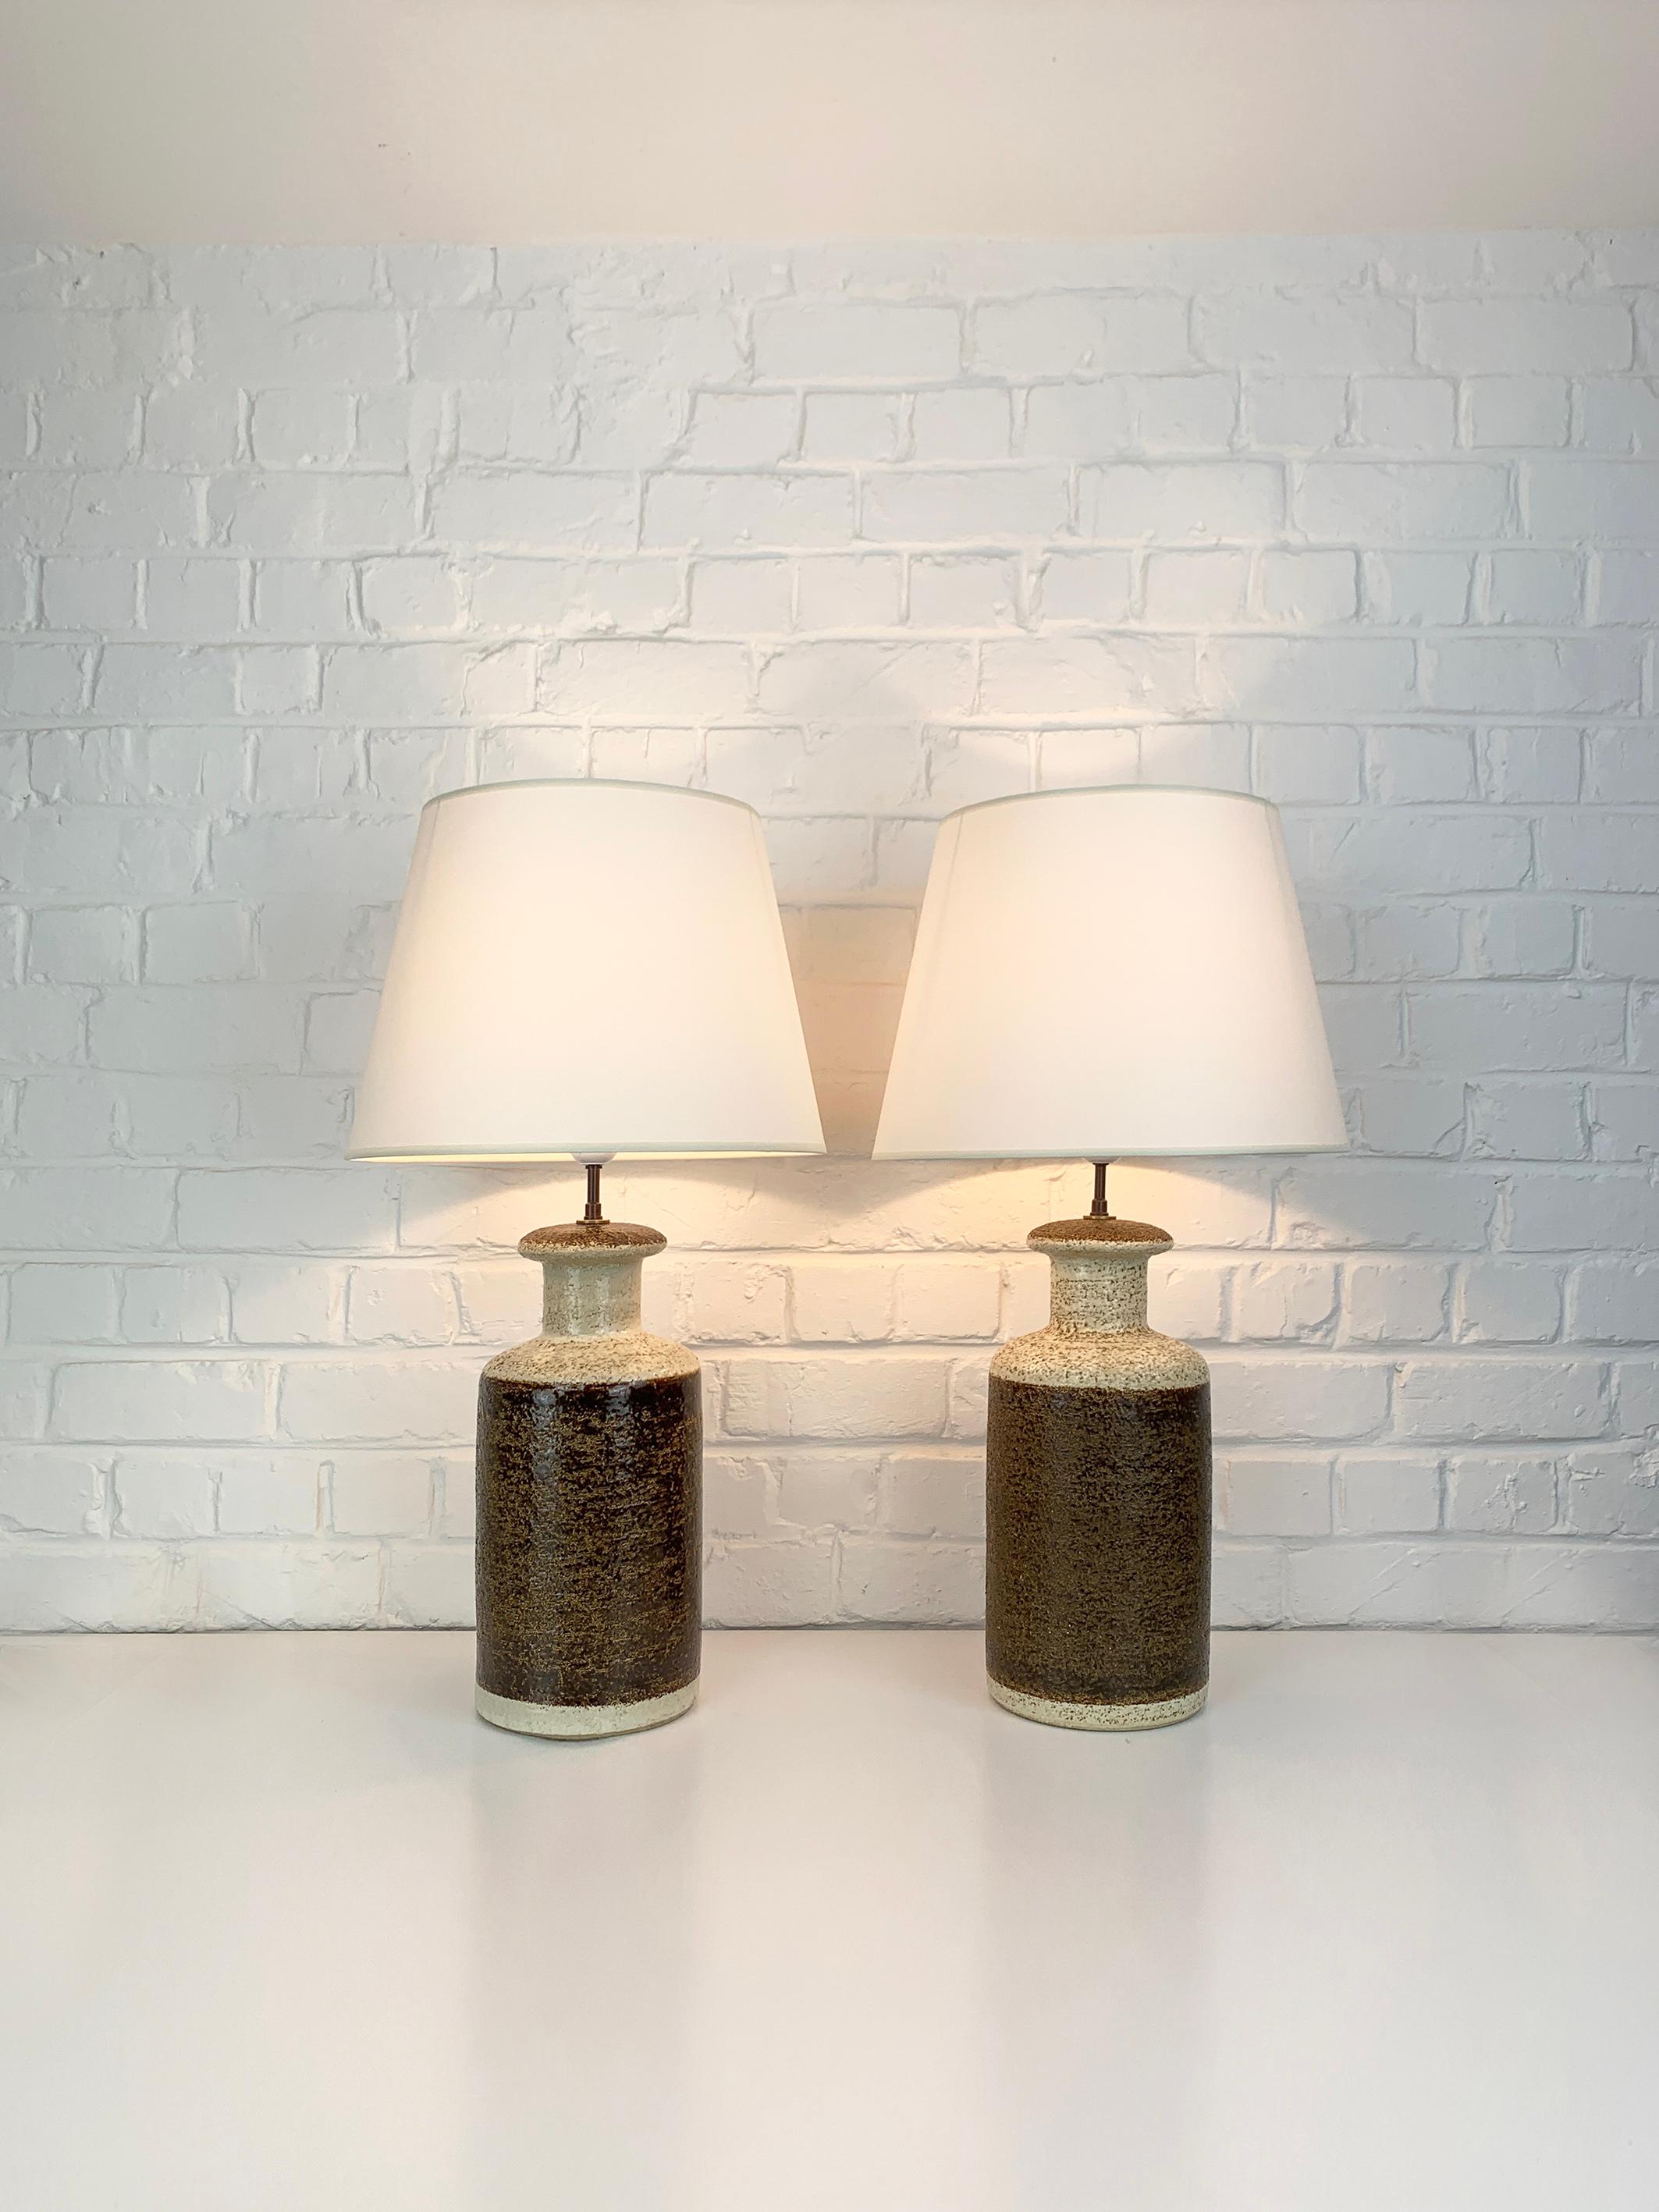 Zwei dänische Steingut-Tischlampen aus der Mitte des Jahrhunderts aus den 1970er Jahren, Design von Svend Aage Jensen. 

Skulpturale Lampenfüße aus Schamotte-Ton mit erdfarbener Glasur, schokoladenbraun und beigefarben. Diese Lampen gibt es in